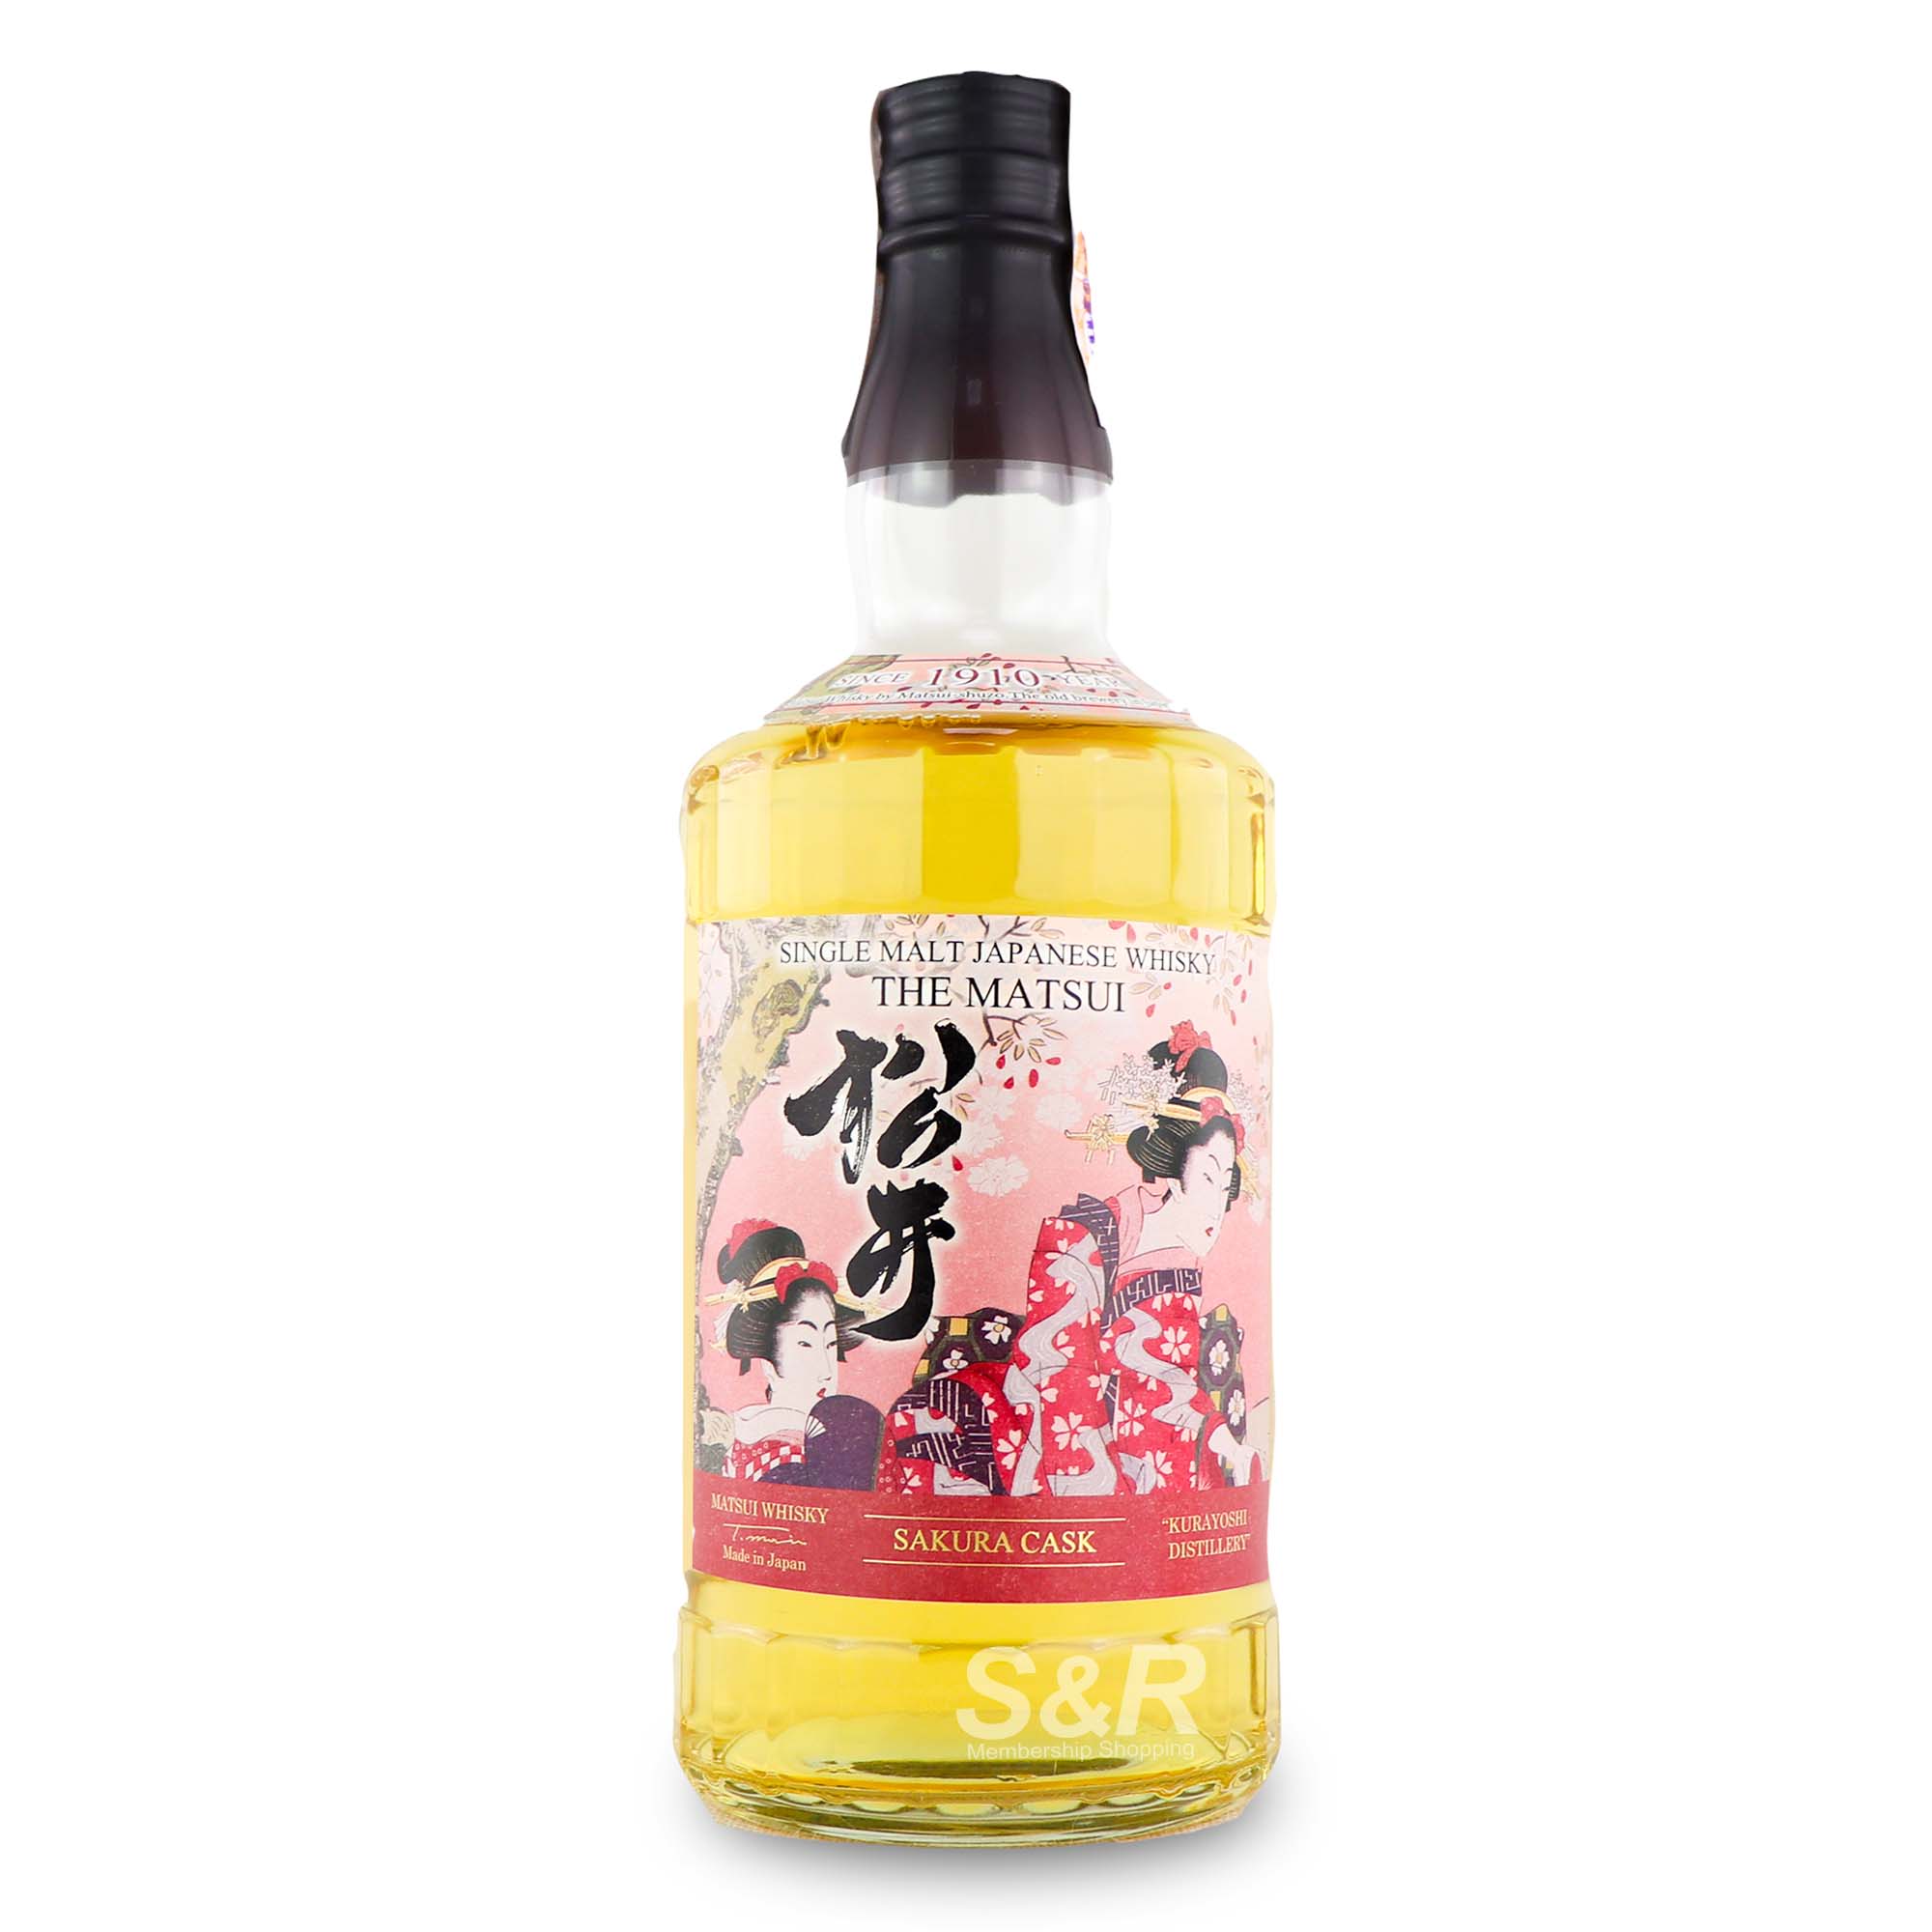 The Matsui Sakura Cask Single Malt Japanese Whisky 700mL